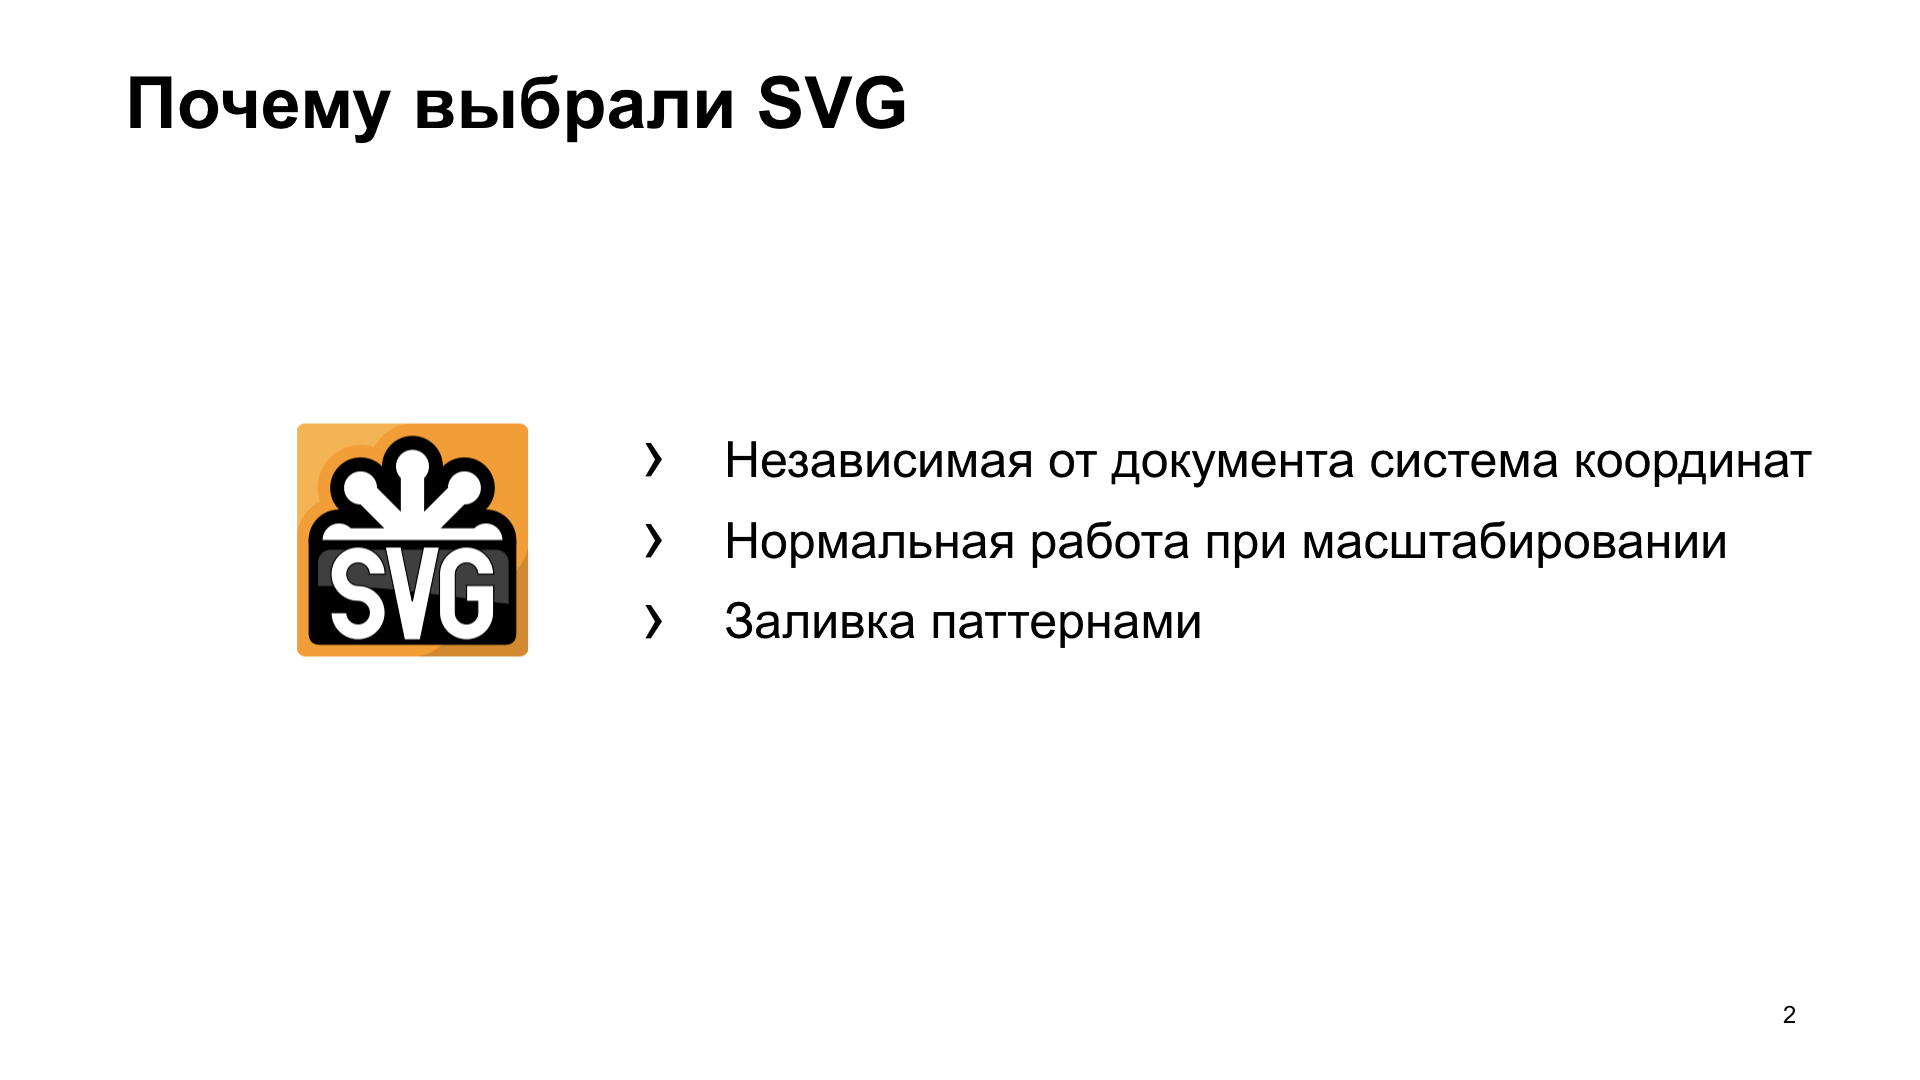 SVG в реальной жизни. Доклад Яндекса - 3